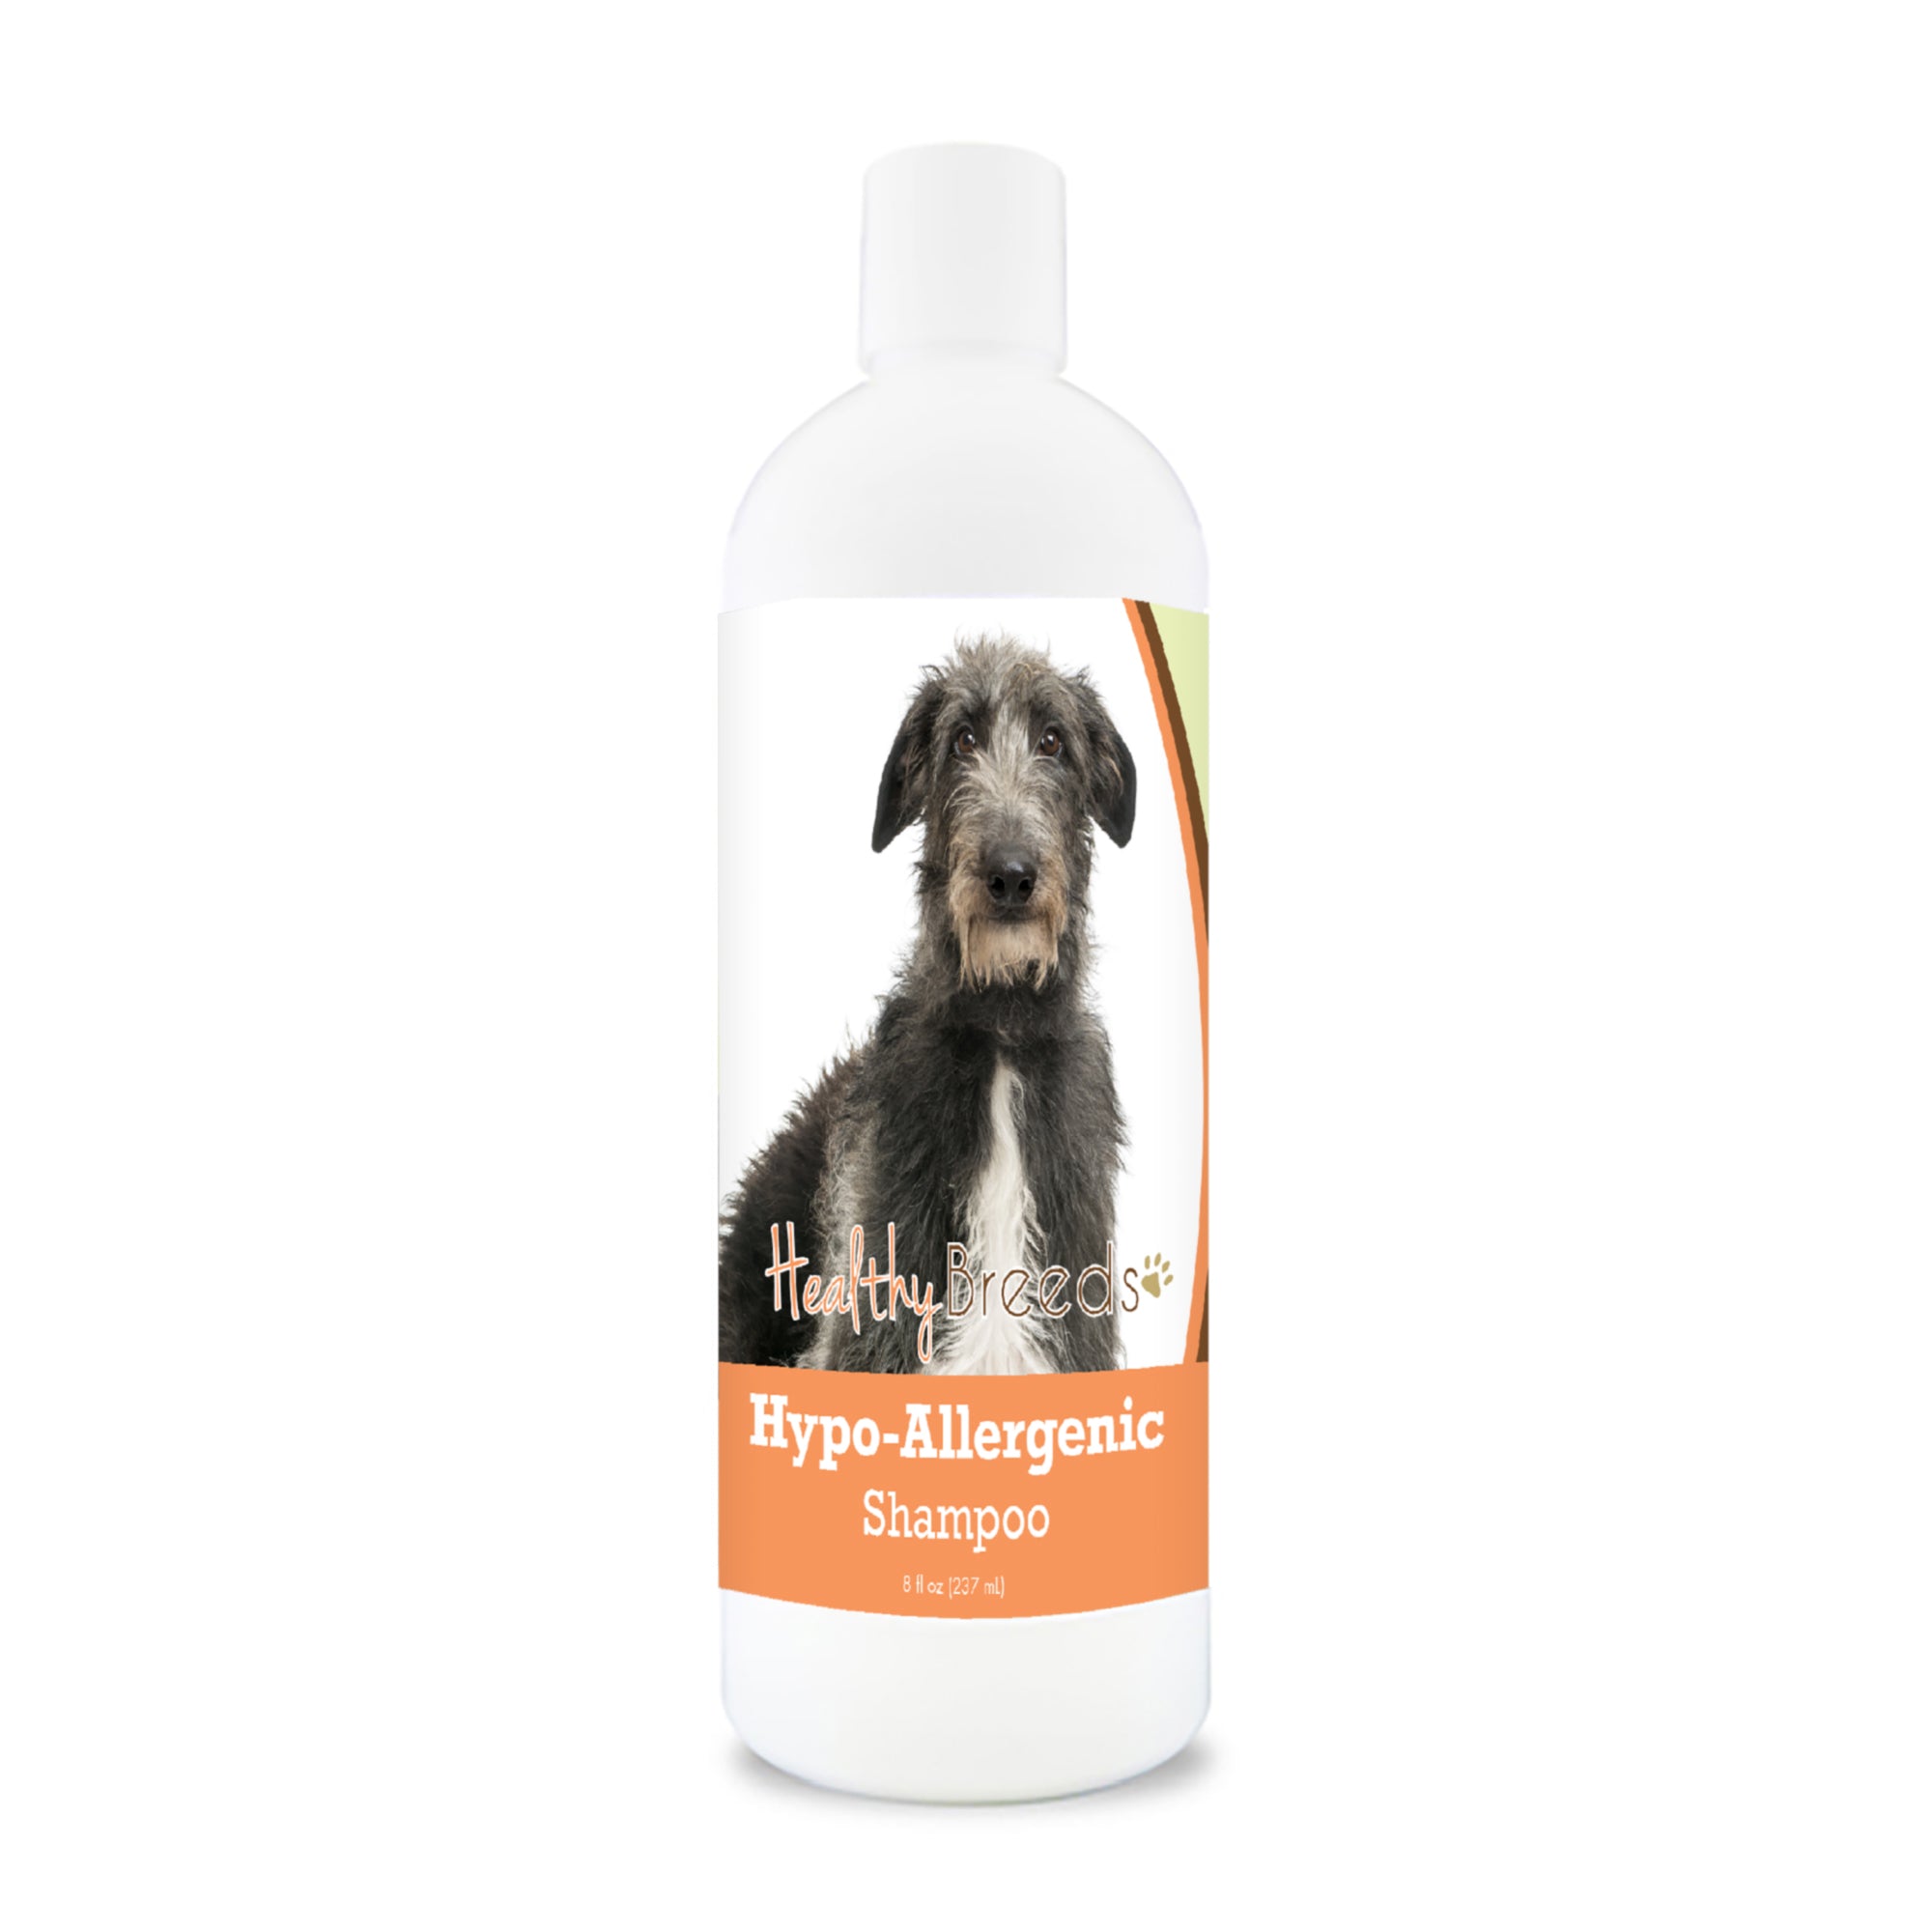 Scottish Deerhound Hypo-Allergenic Shampoo 8 oz